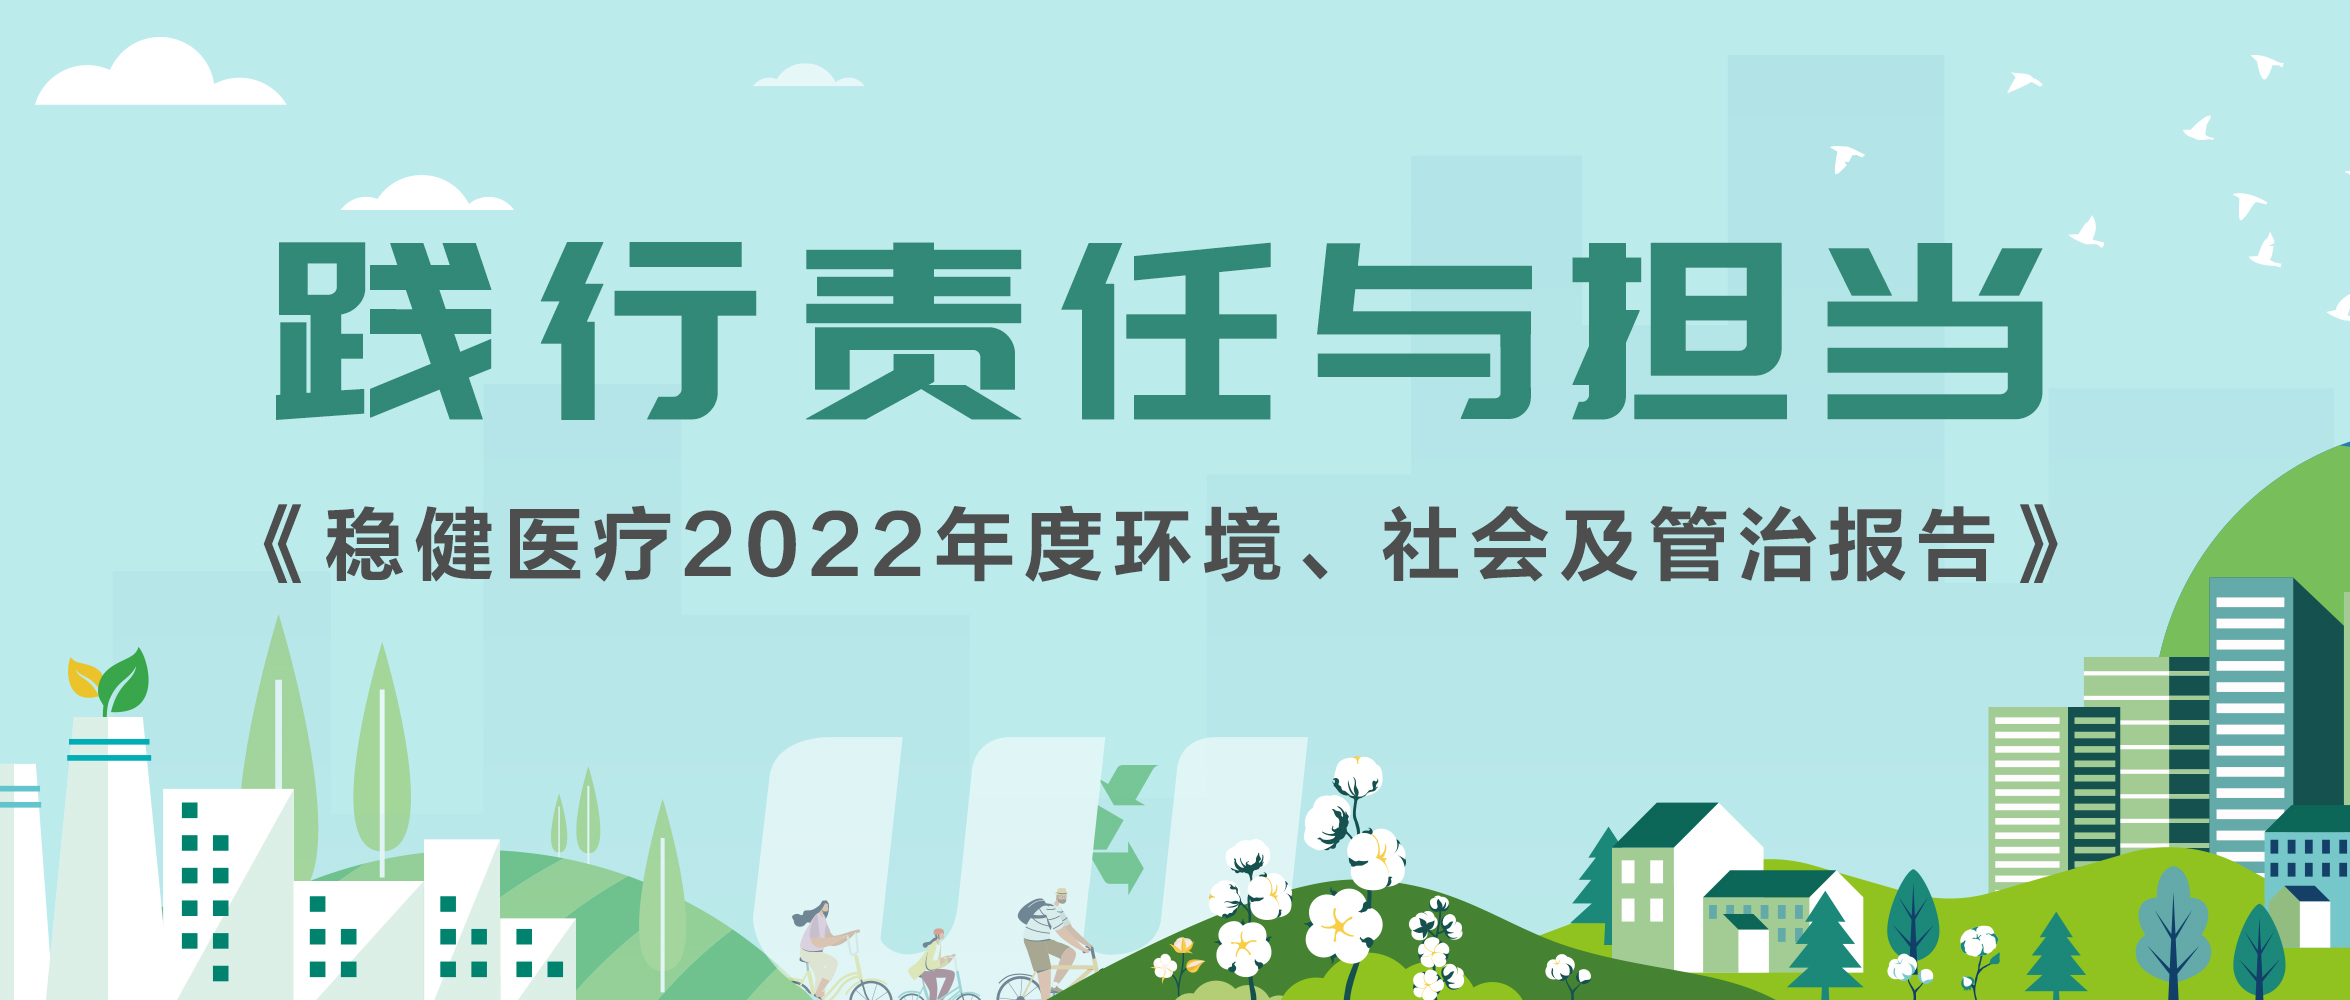 非凡彩票app下载2022年ESG报告发布